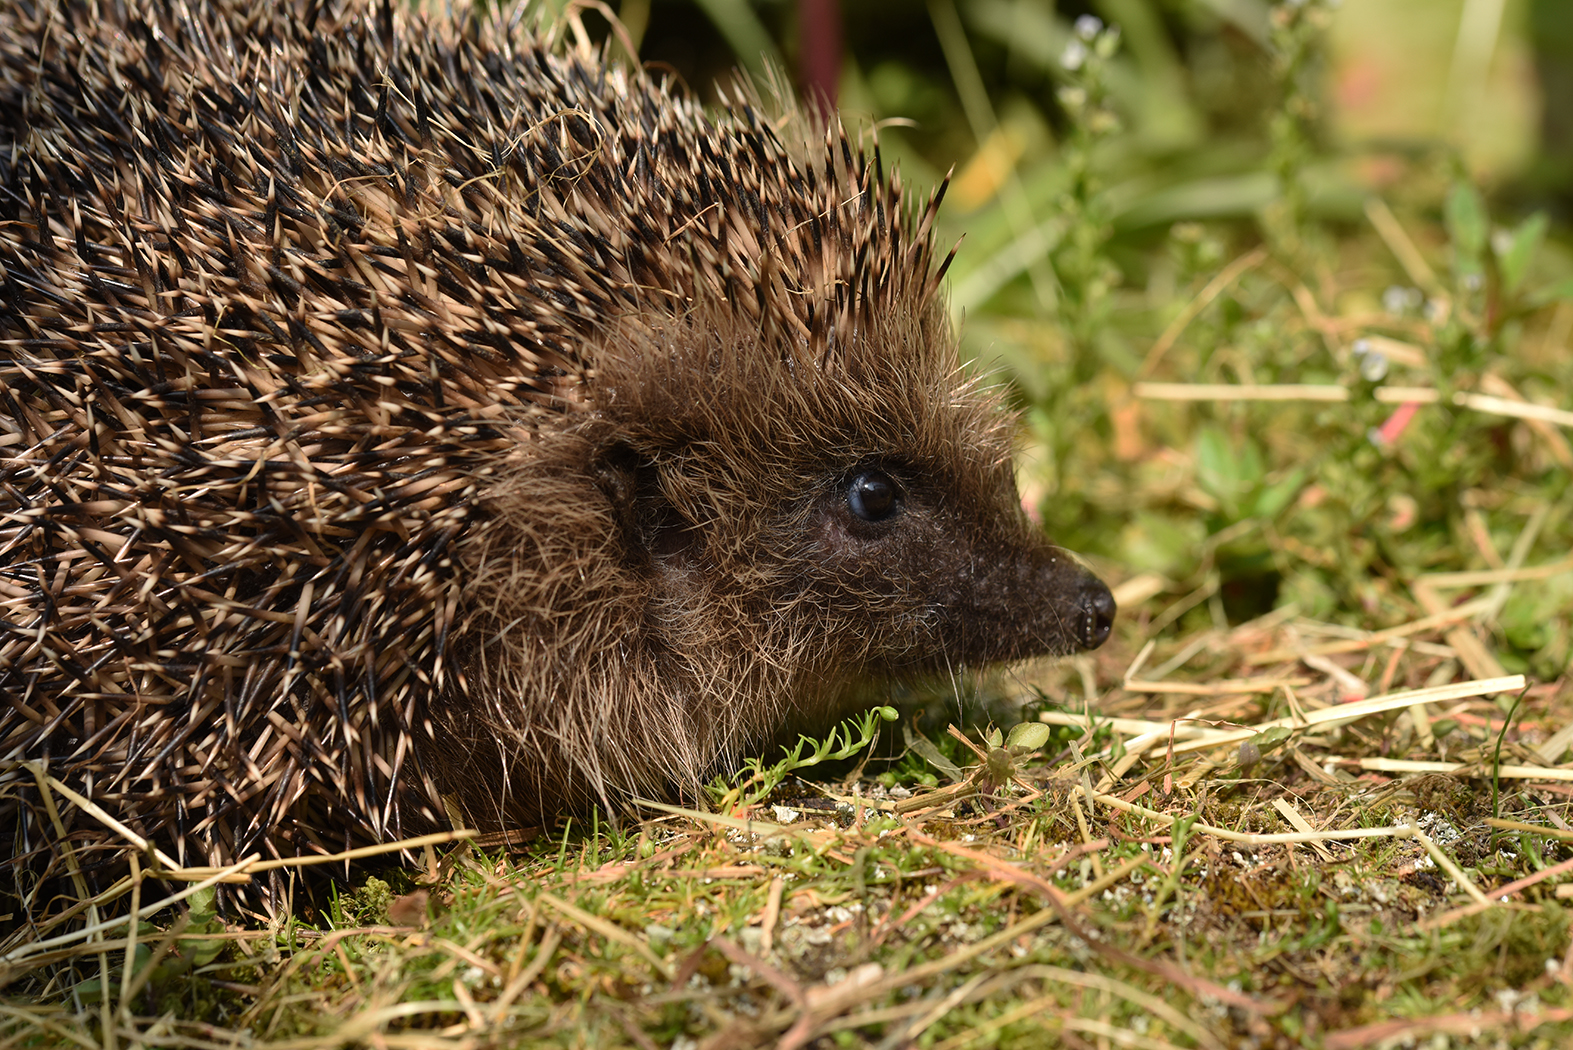 Hedgehog by David Lidstone